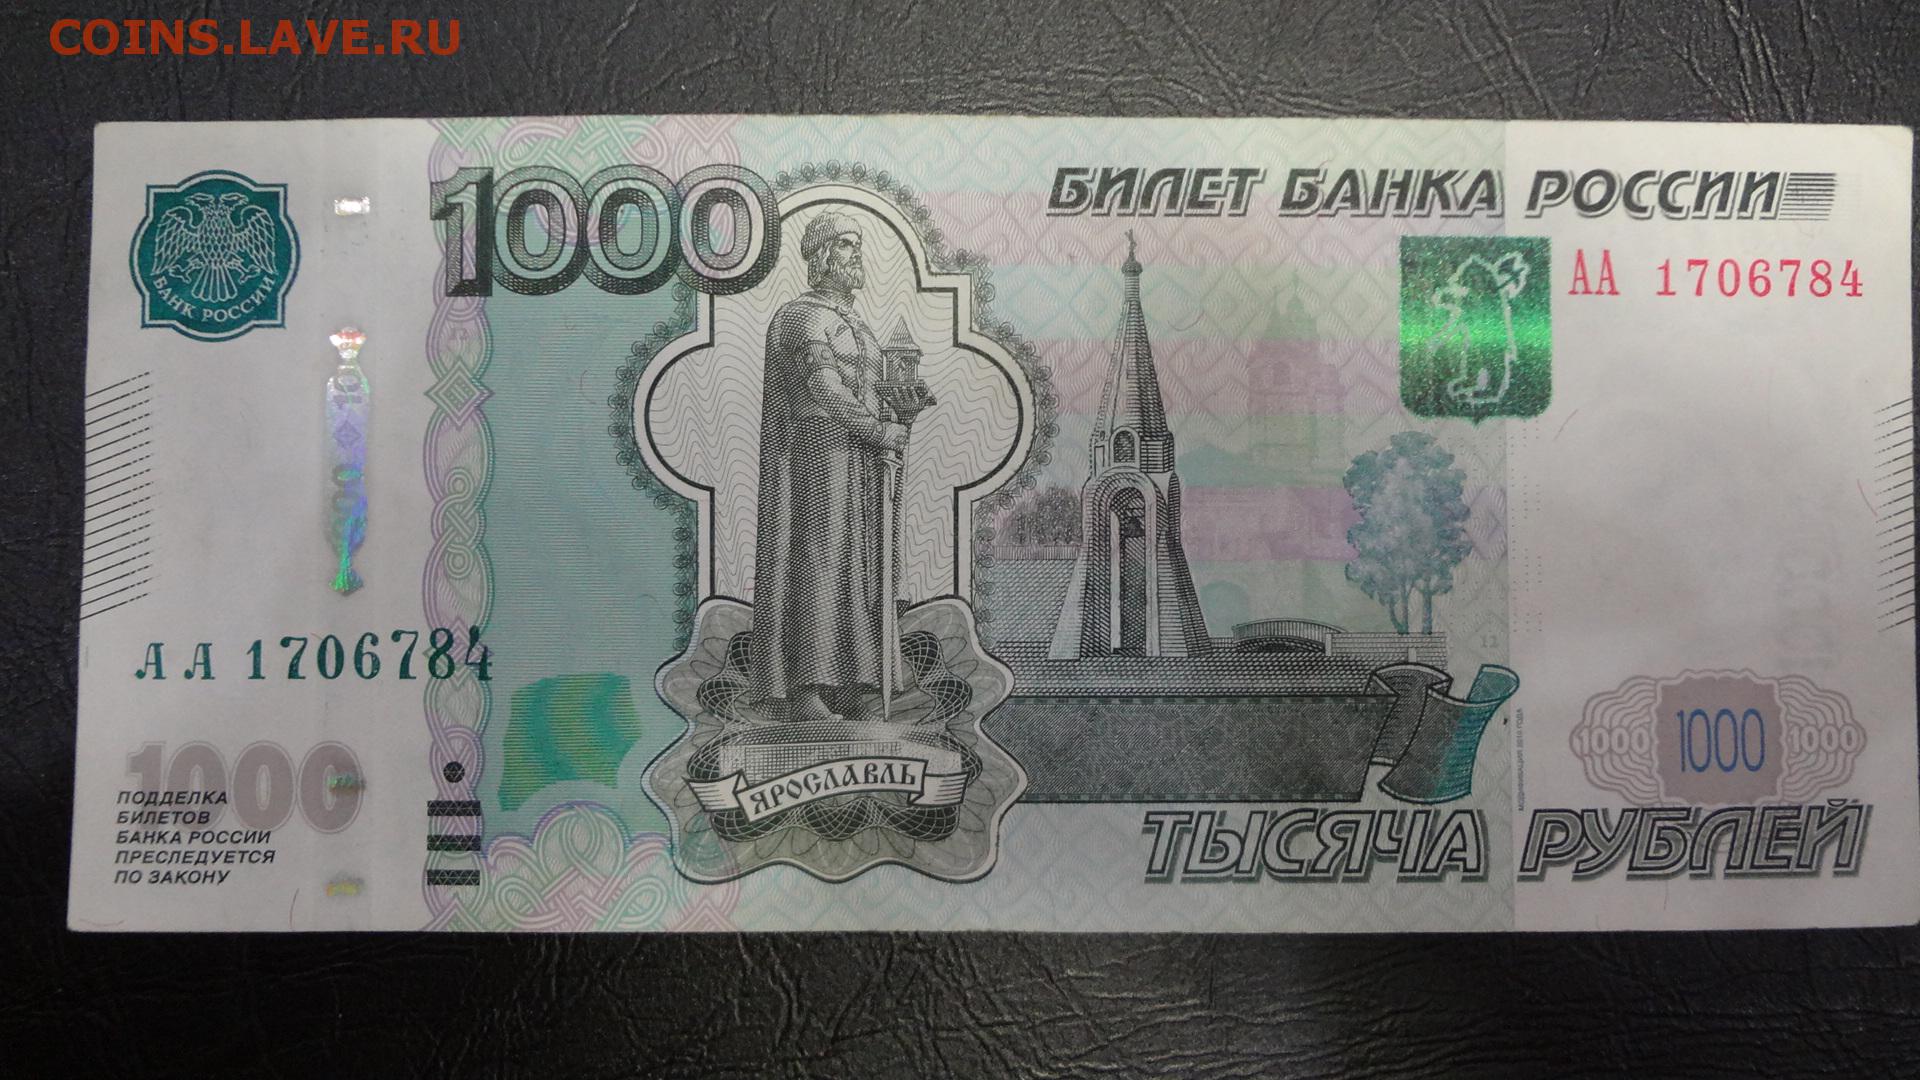 1000 рублях в г. 1000 Рублей. Купюра 1000 рублей. Банкнота 1000 рублей. Банкнота 1000 рублей 2010 года.